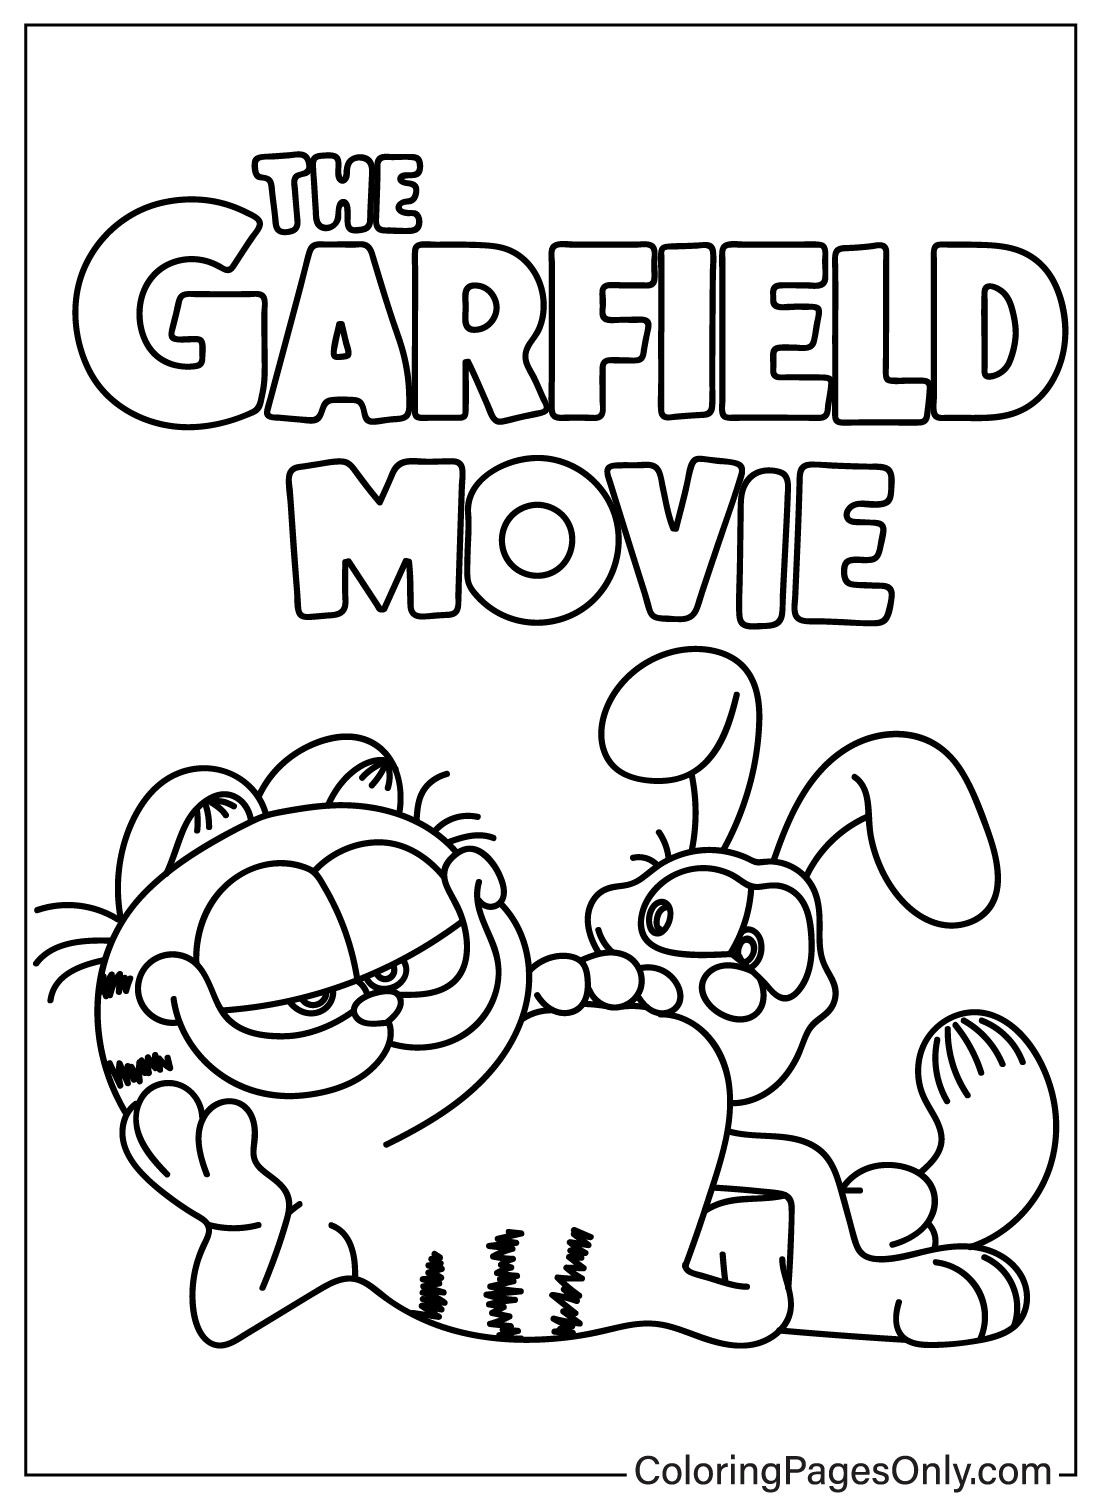 Página para colorear de Garfield y Odie de Garfield